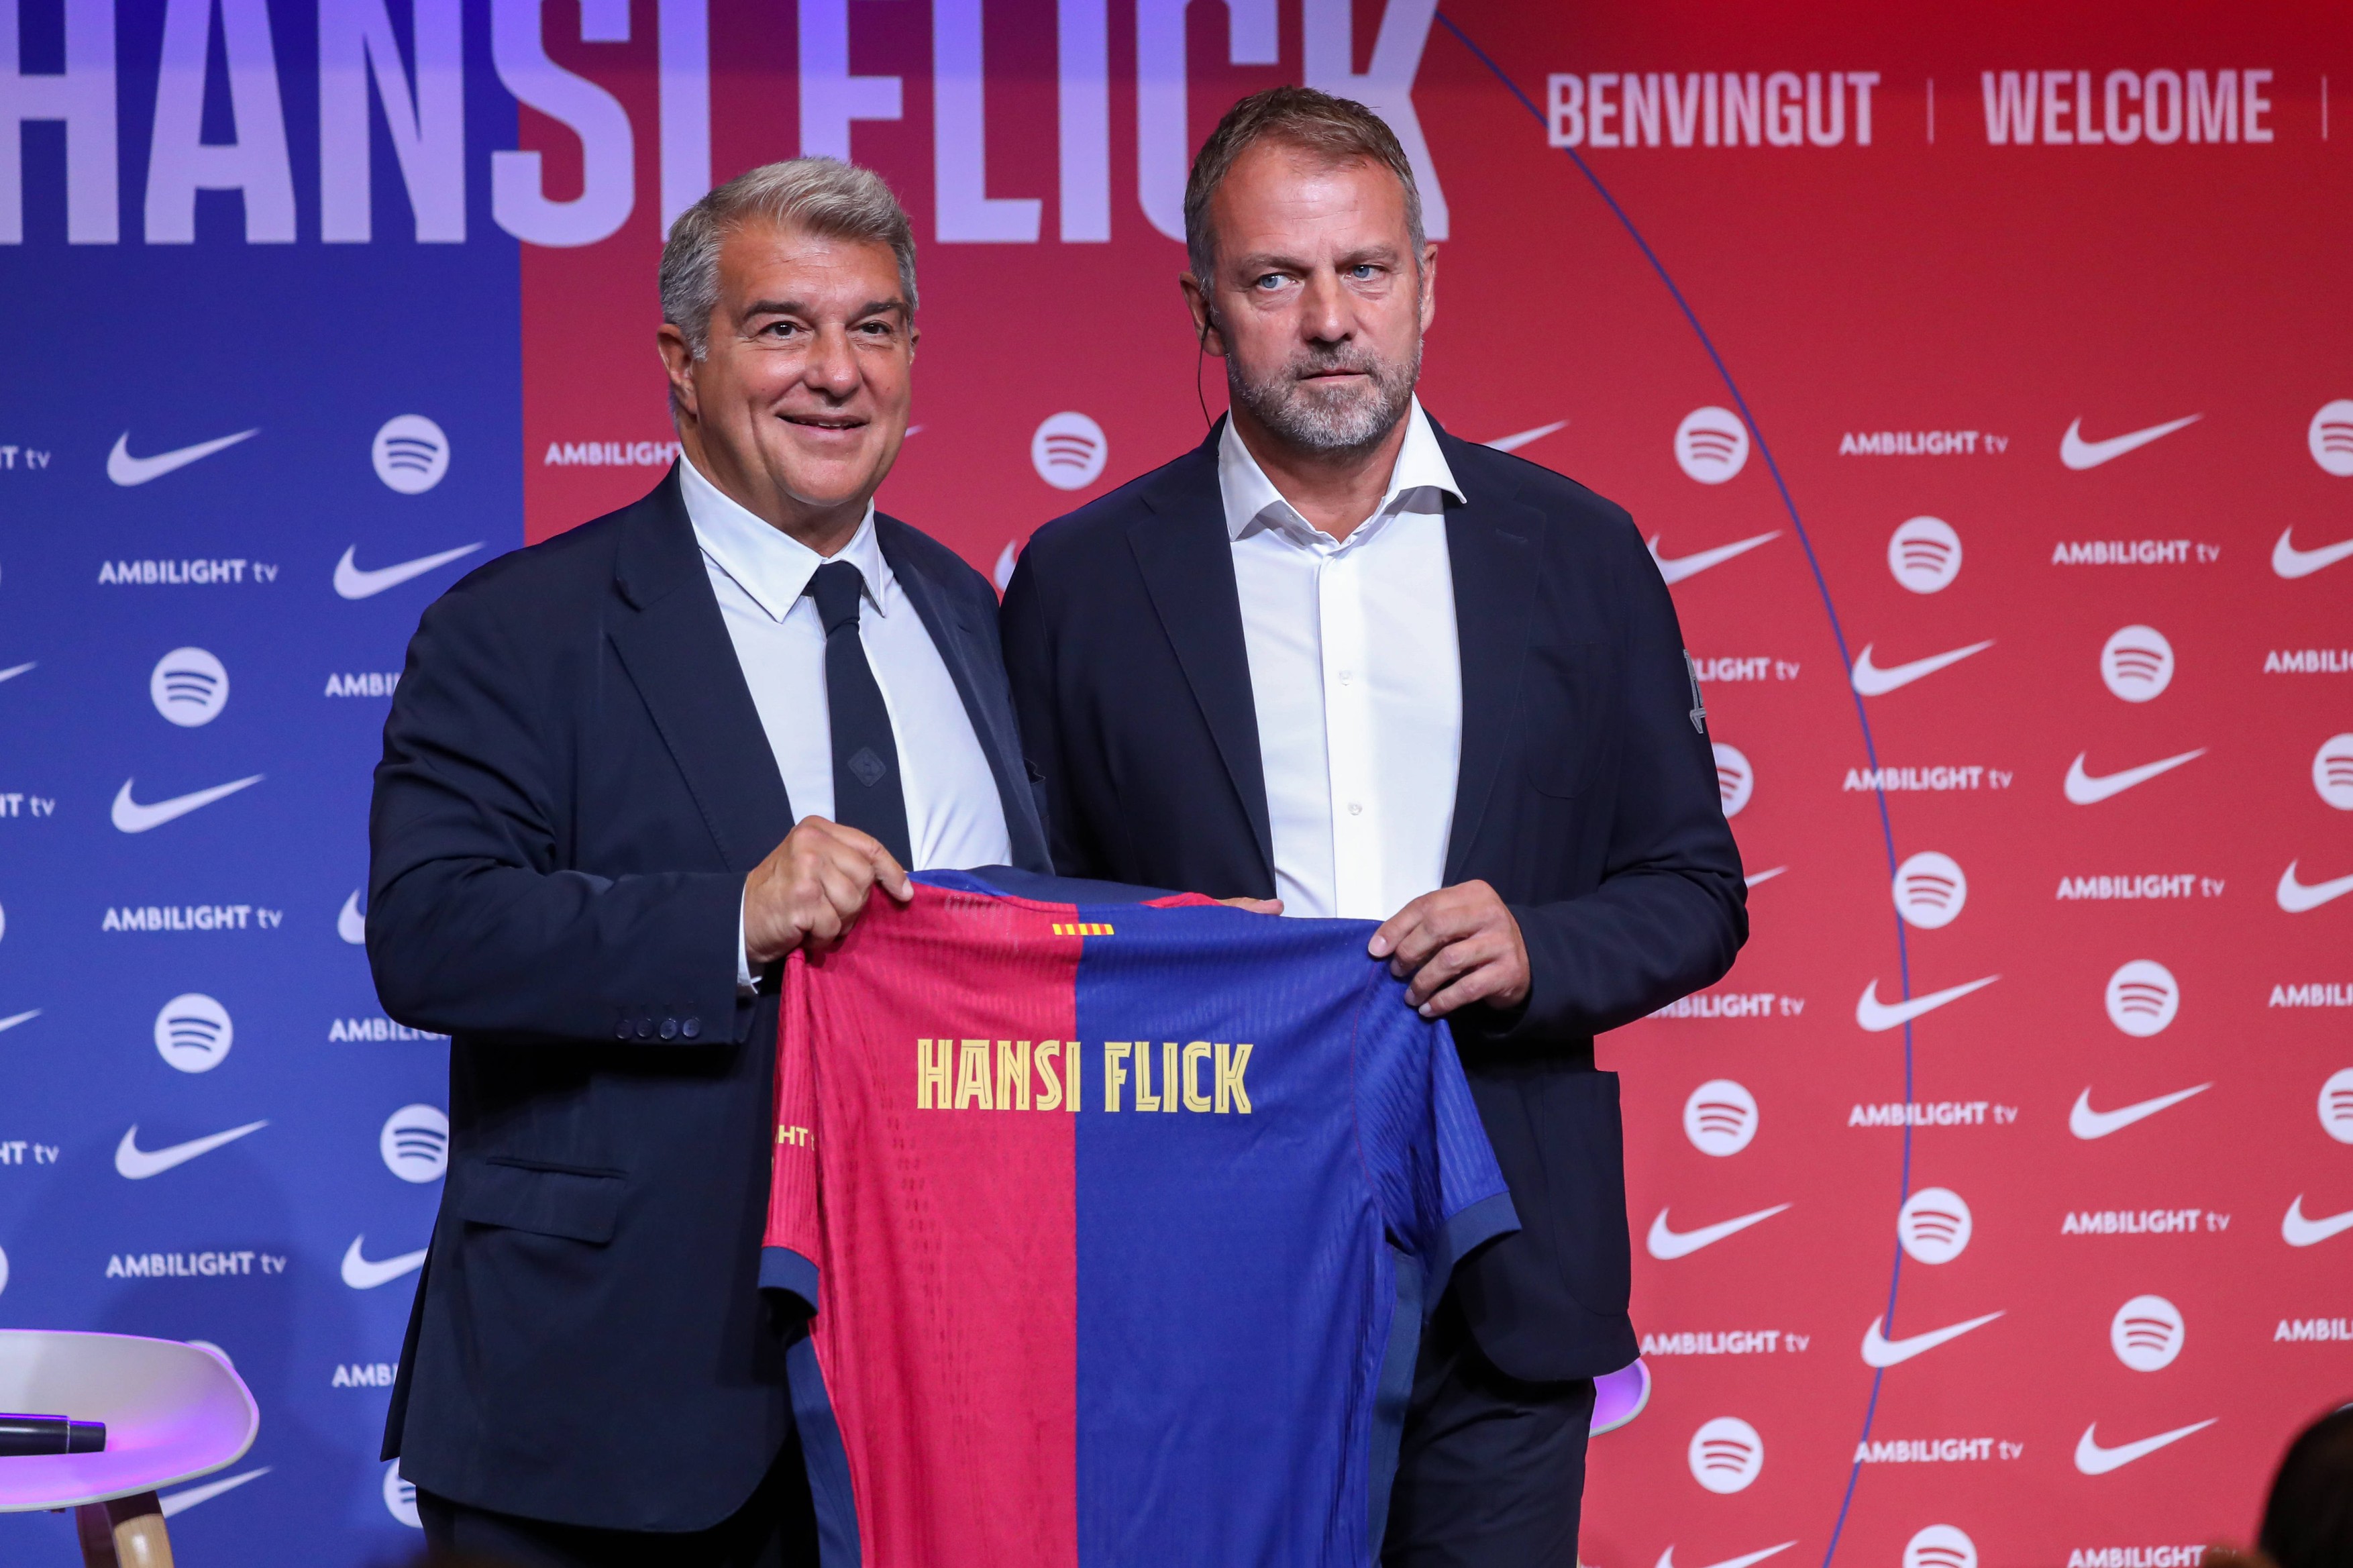 Hansi Flick, după ce a fost prezentat oficial la Barcelona: ”Mi-am îndeplinit promisiunea față de mine”